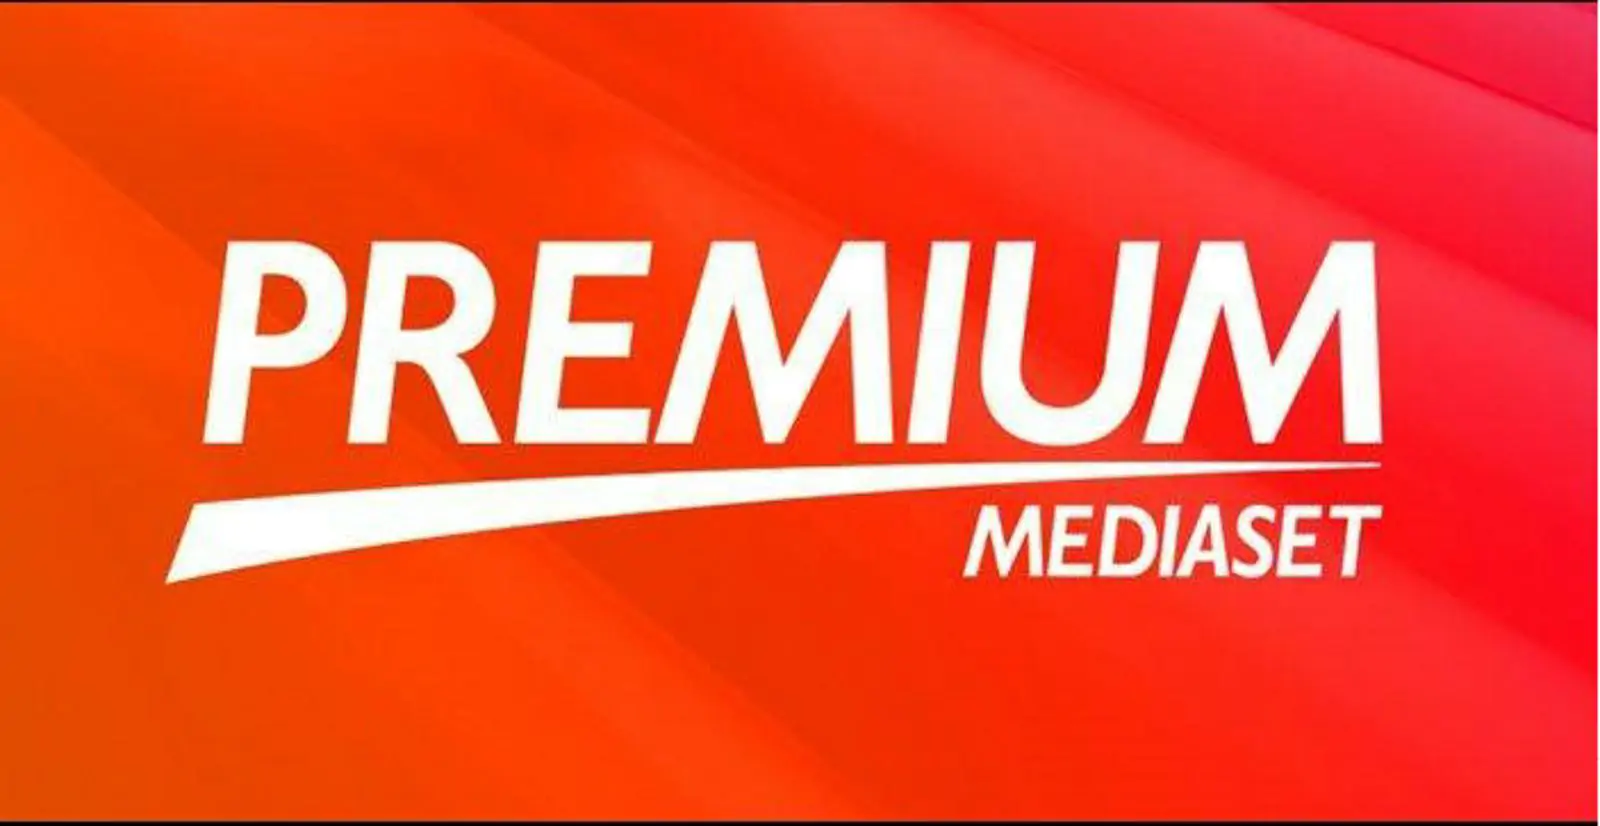 Mediaset Premium 1600x2077